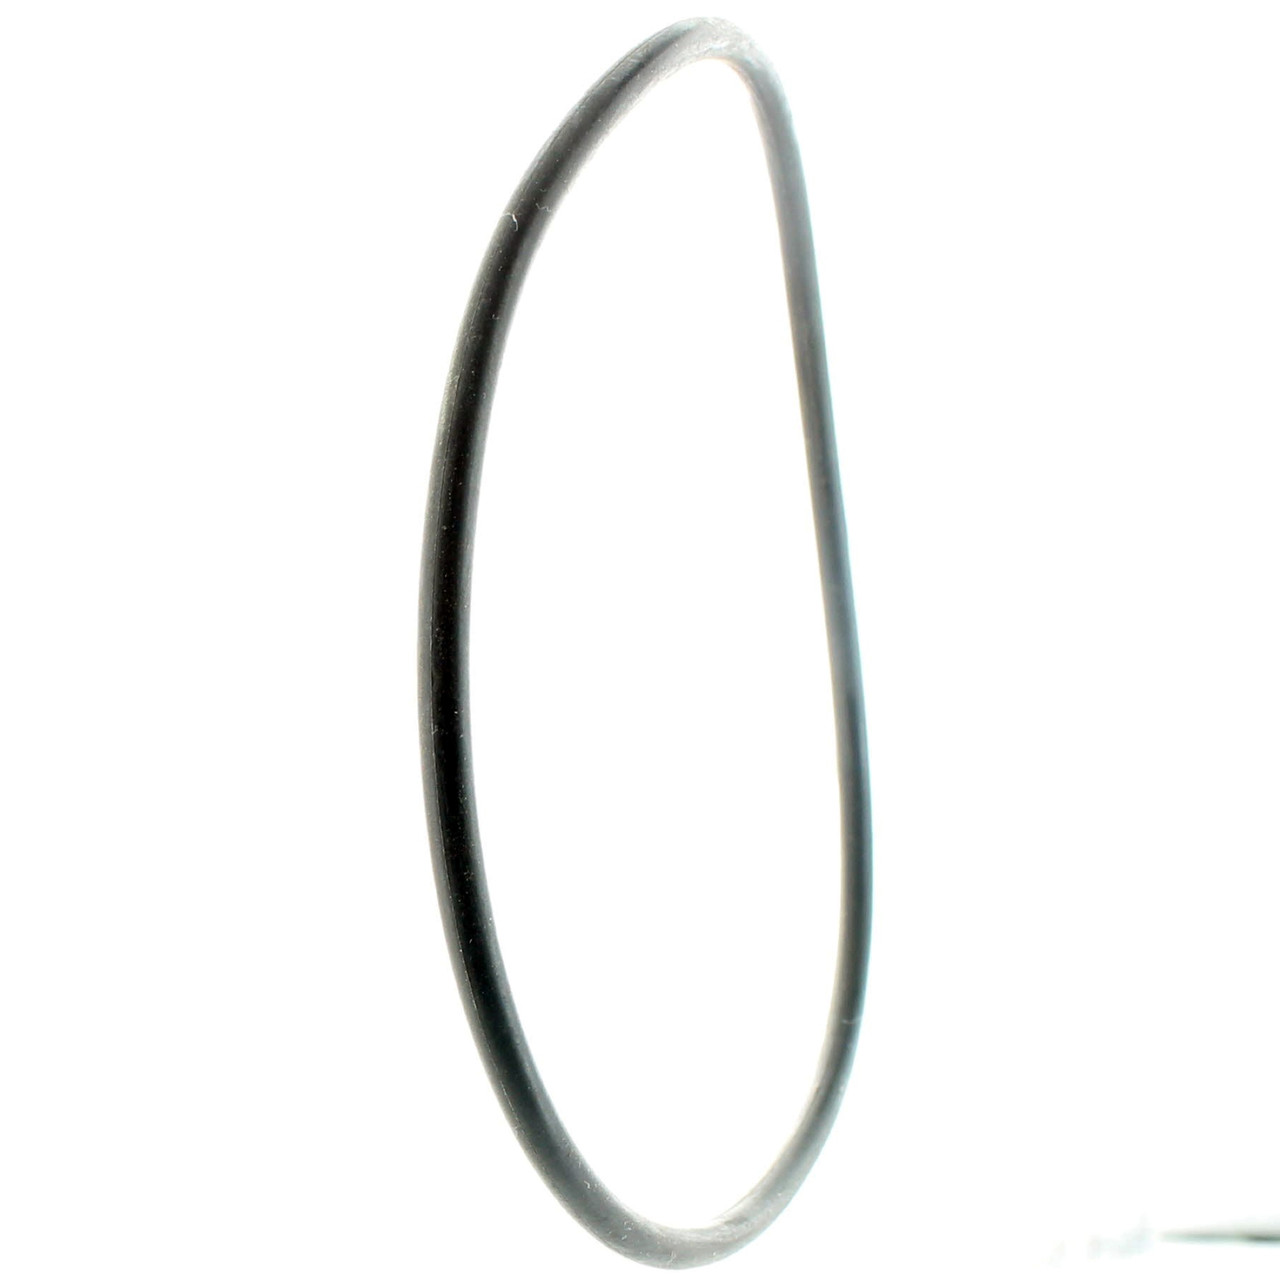 Ski-Doo New OEM Rubber O-Ring, 420931410